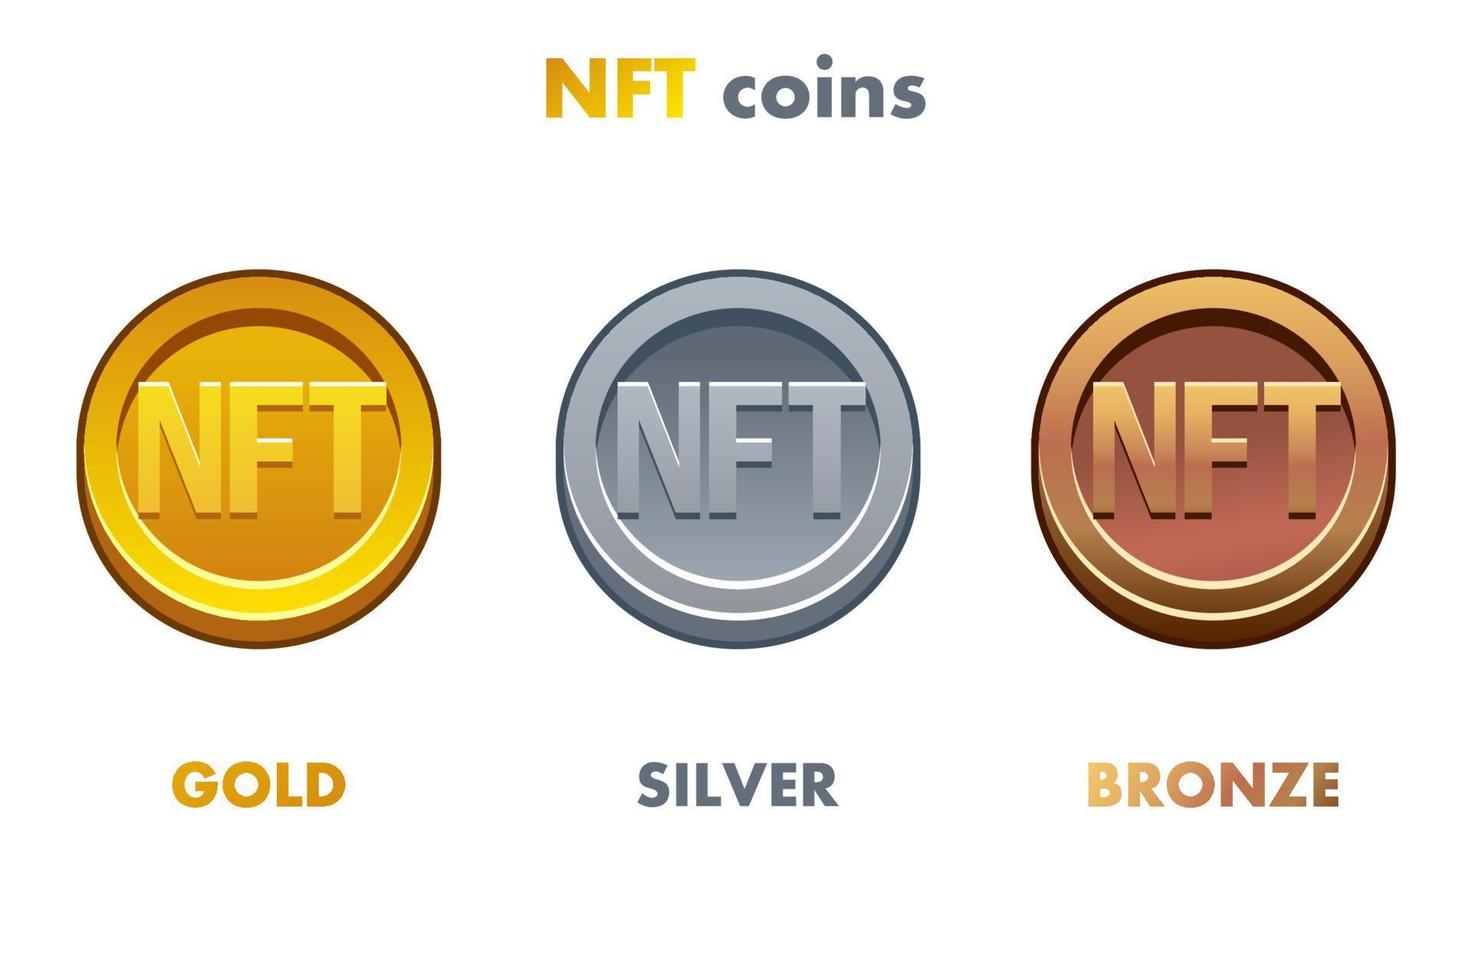 moedas nft em diferentes metais. moedas de ouro, prata e bronze. criptomoeda, moeda de internet nft-token do futuro vetor